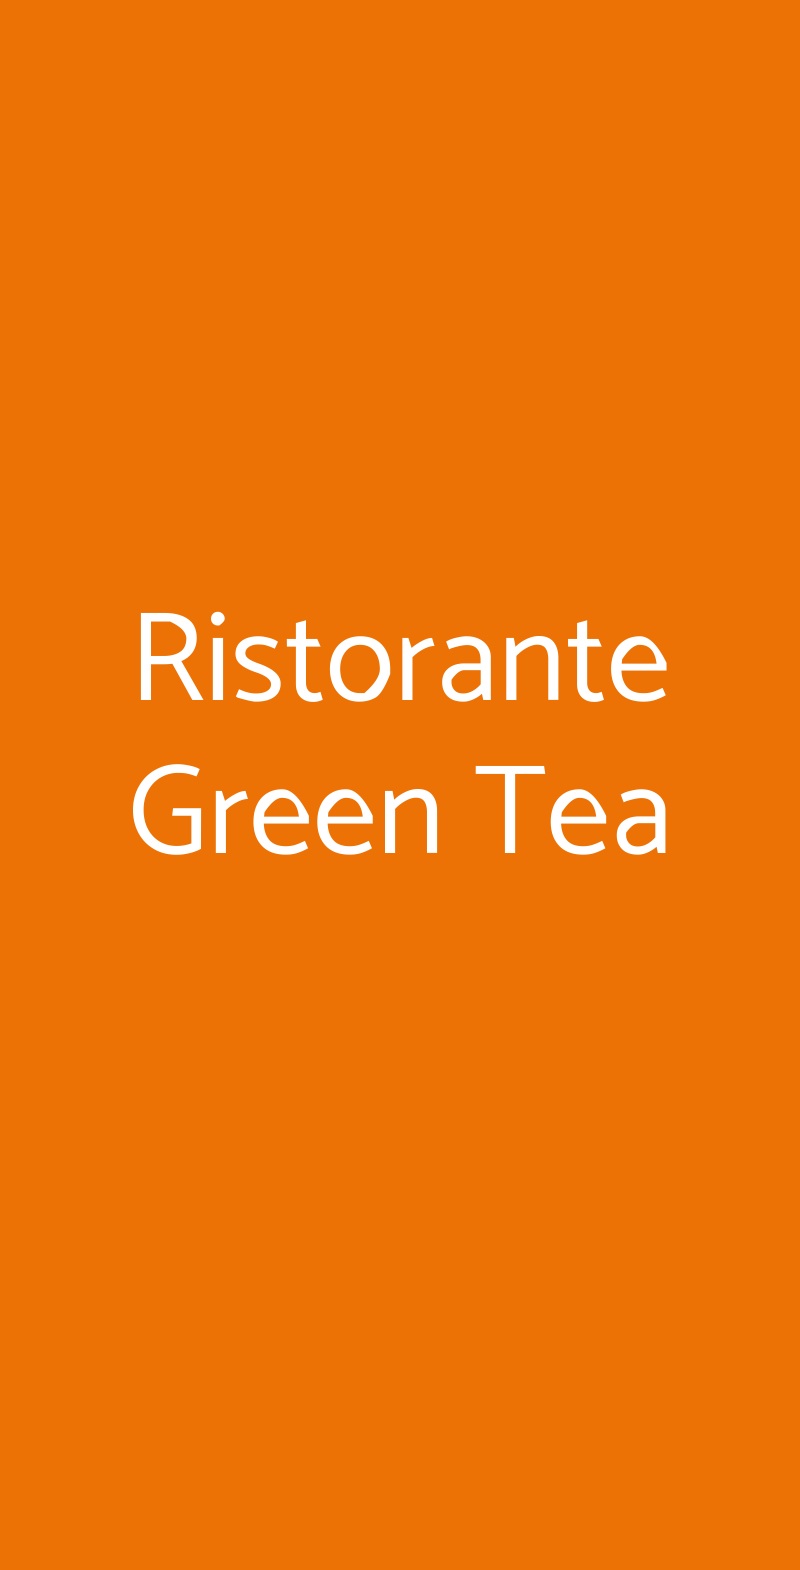 Ristorante Green Tea La Spezia menù 1 pagina